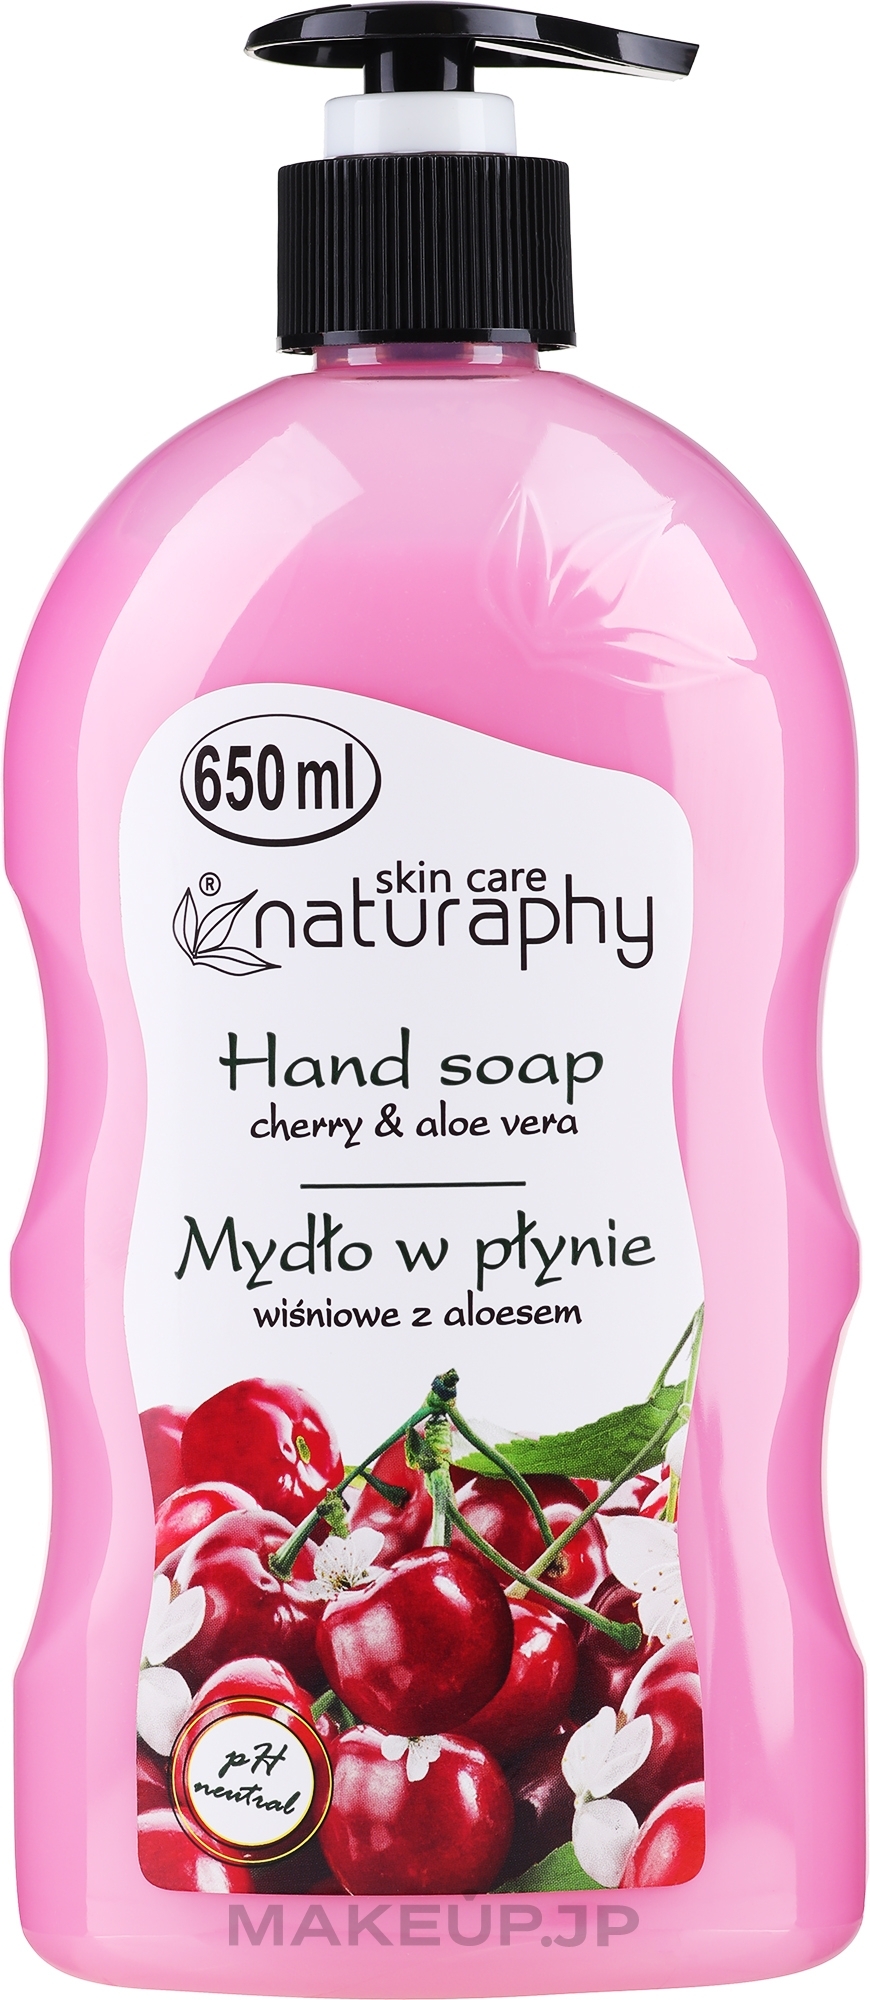 Cherry & Aloe Vera Liquid Hand Soap - Naturaphy Hand Soap — photo 650 ml